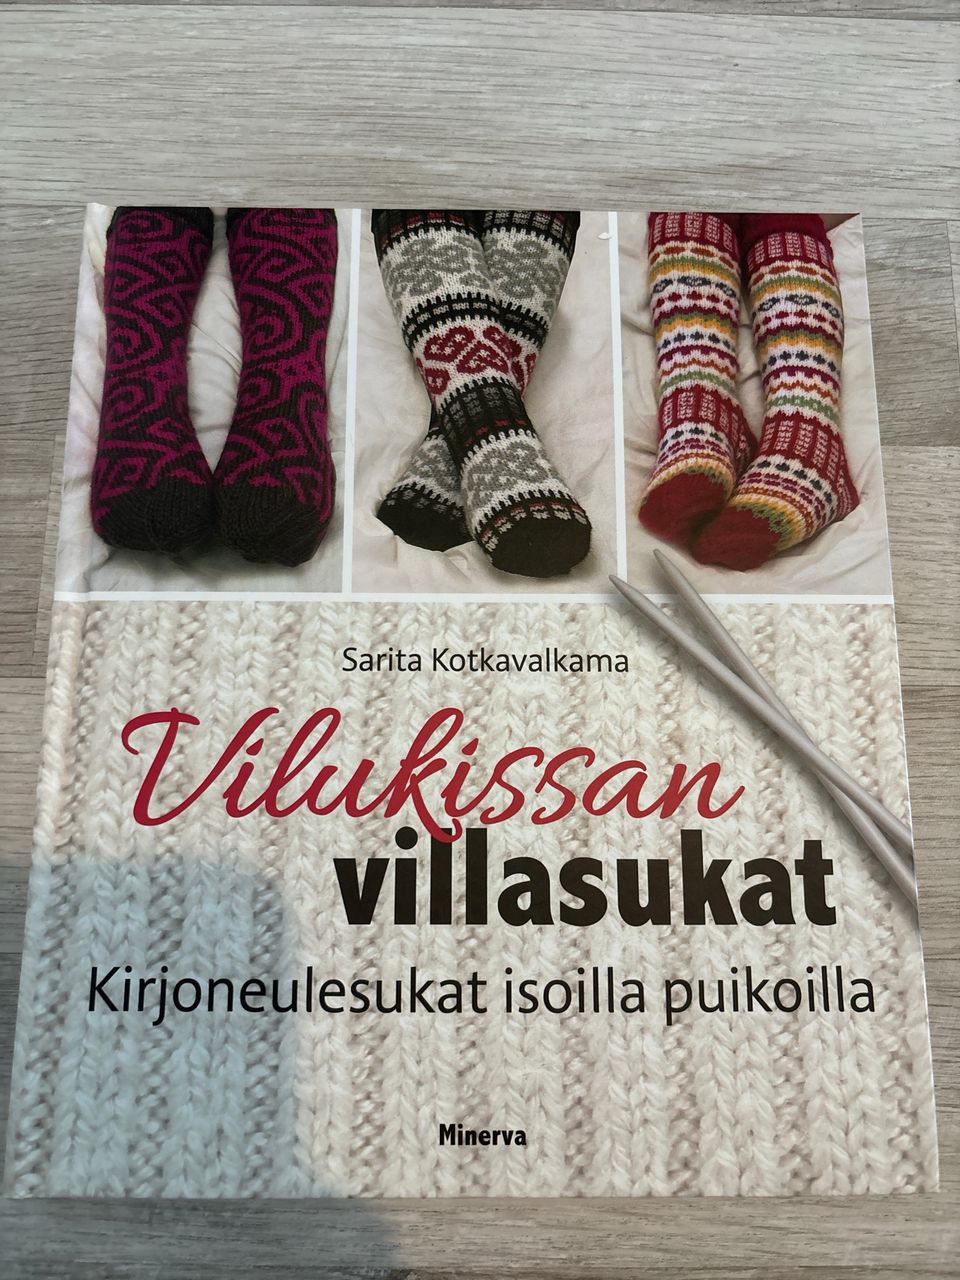 Sarita Kotkavalkama: Vilukissan villasukat